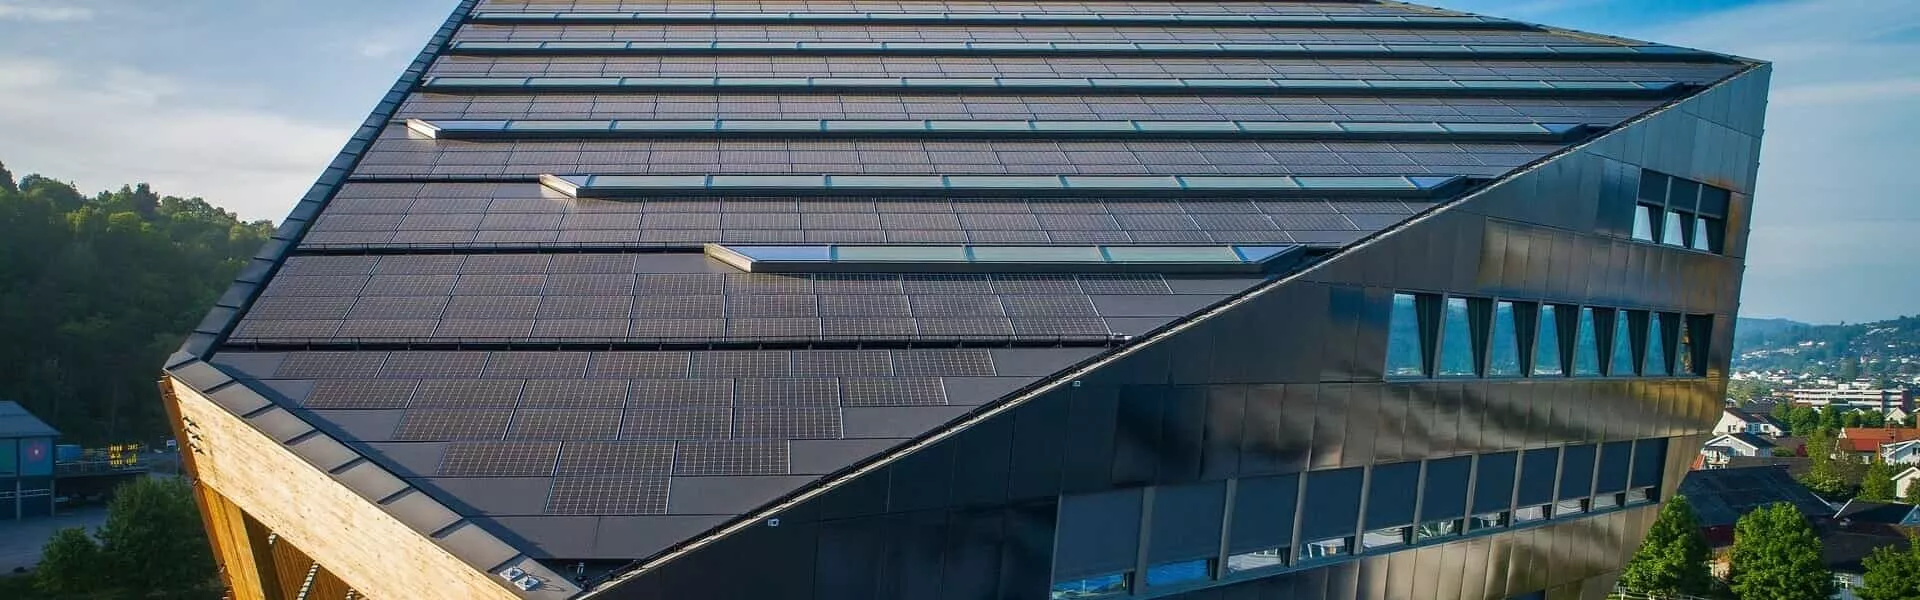 エネルギーポジティブな建物 | 未来の太陽光発電 | Maxeon Japan